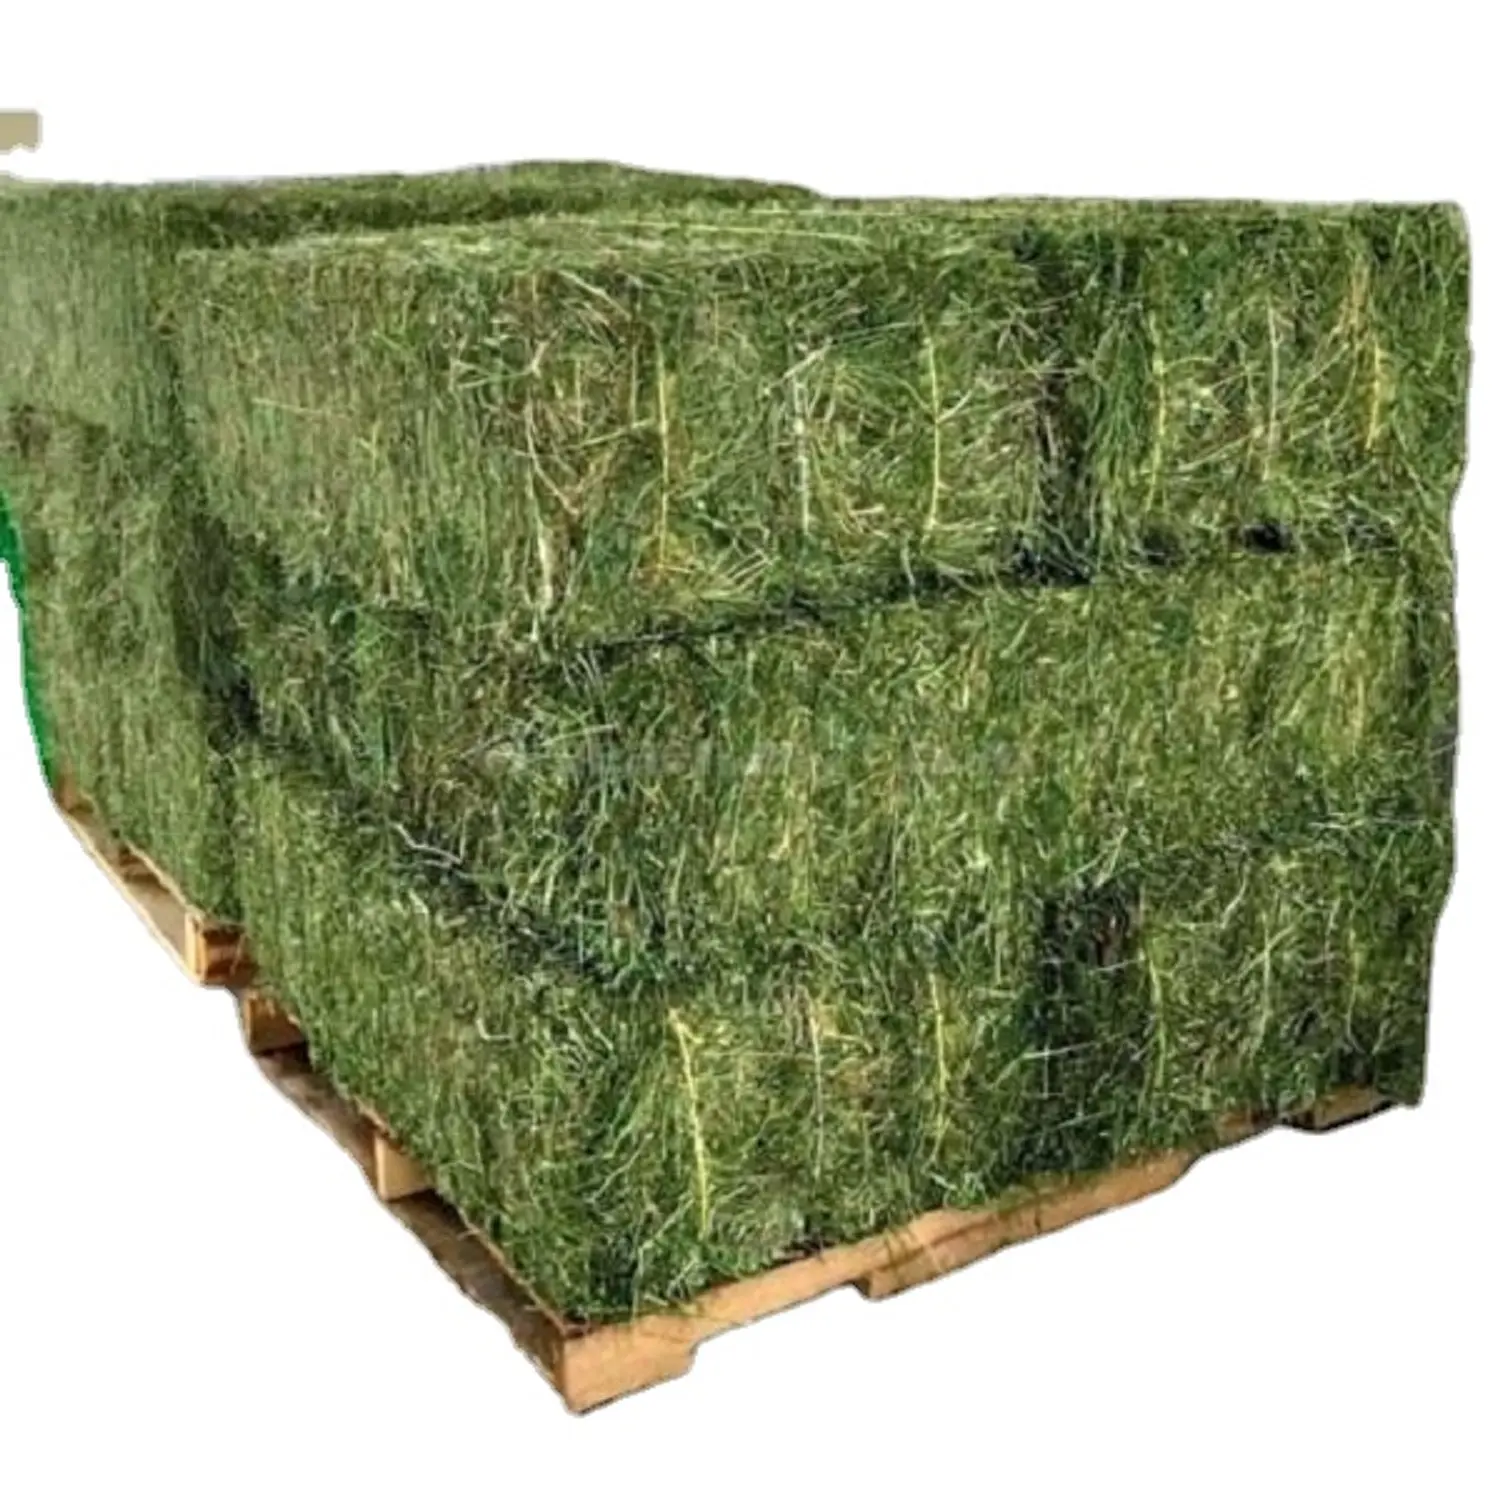 Alfalfa feno/alfalfa baled em estoque pronto para venda